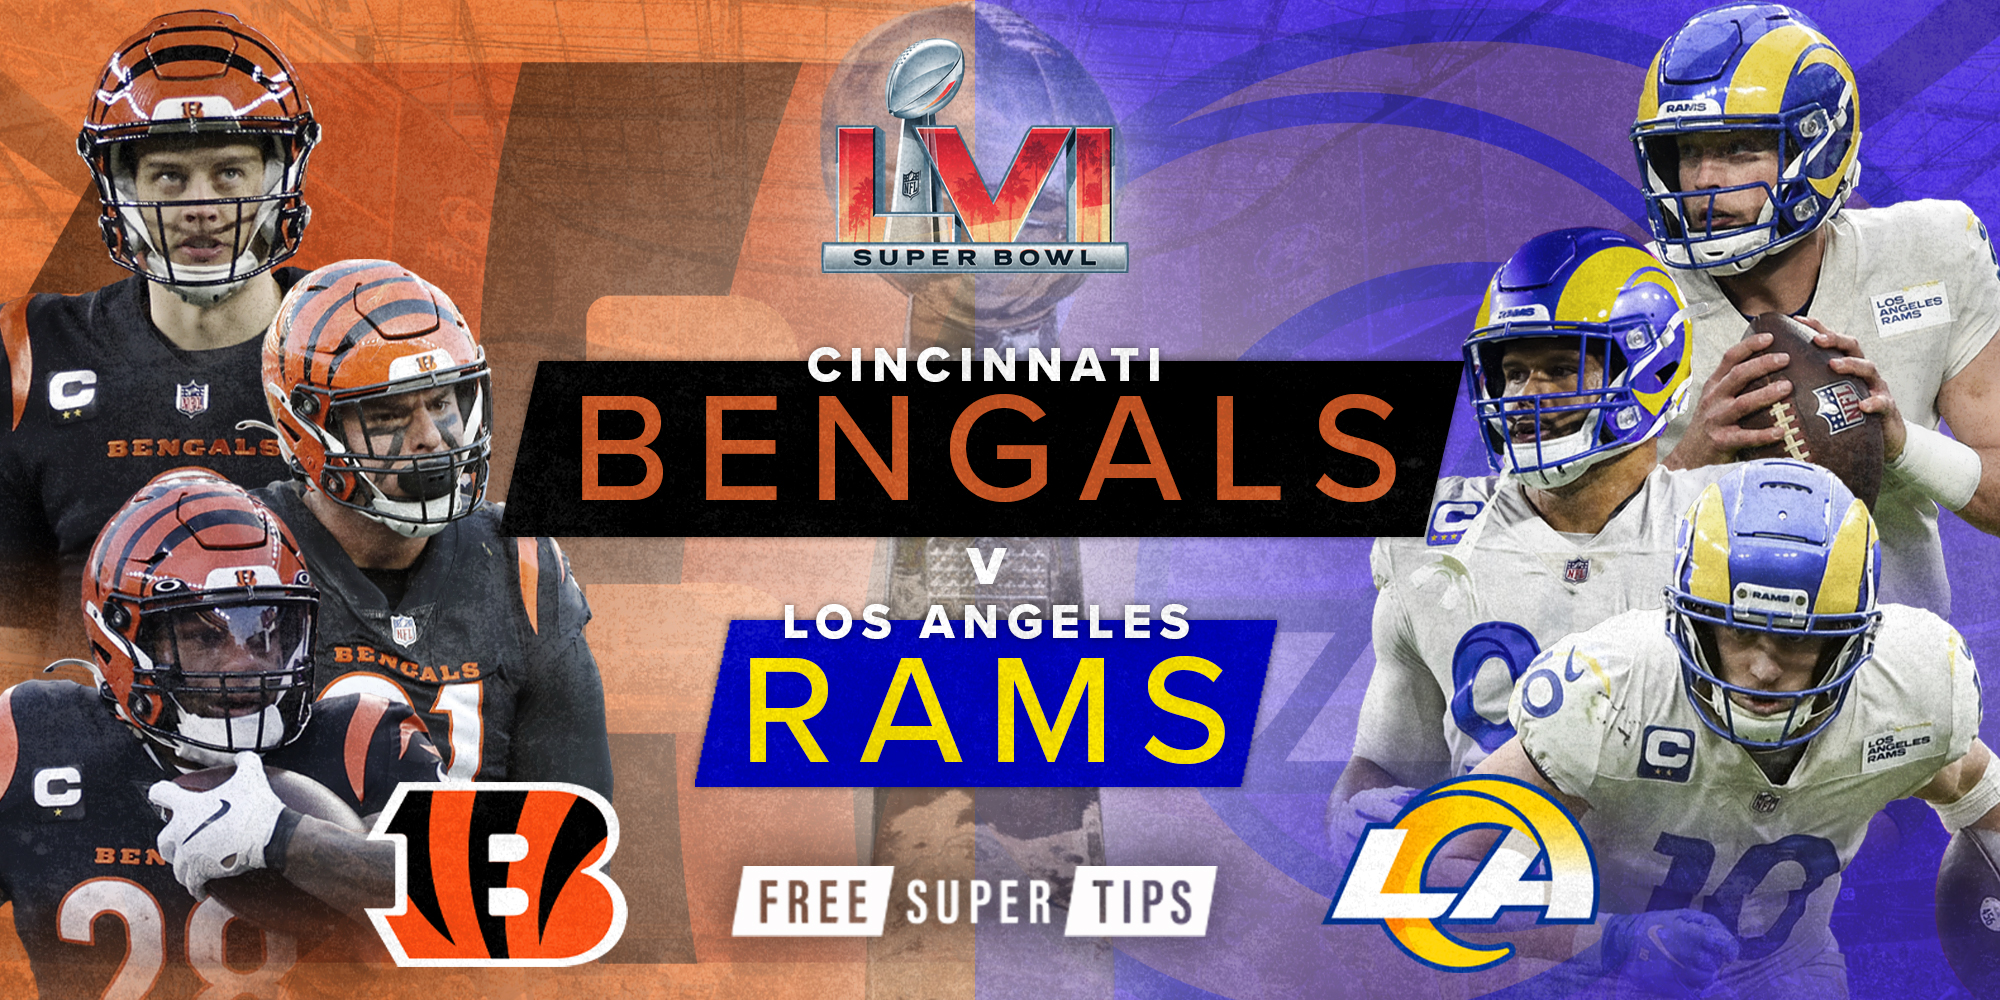 Los Angeles Rams win Super Bowl LVI over Cincinnati Bengals